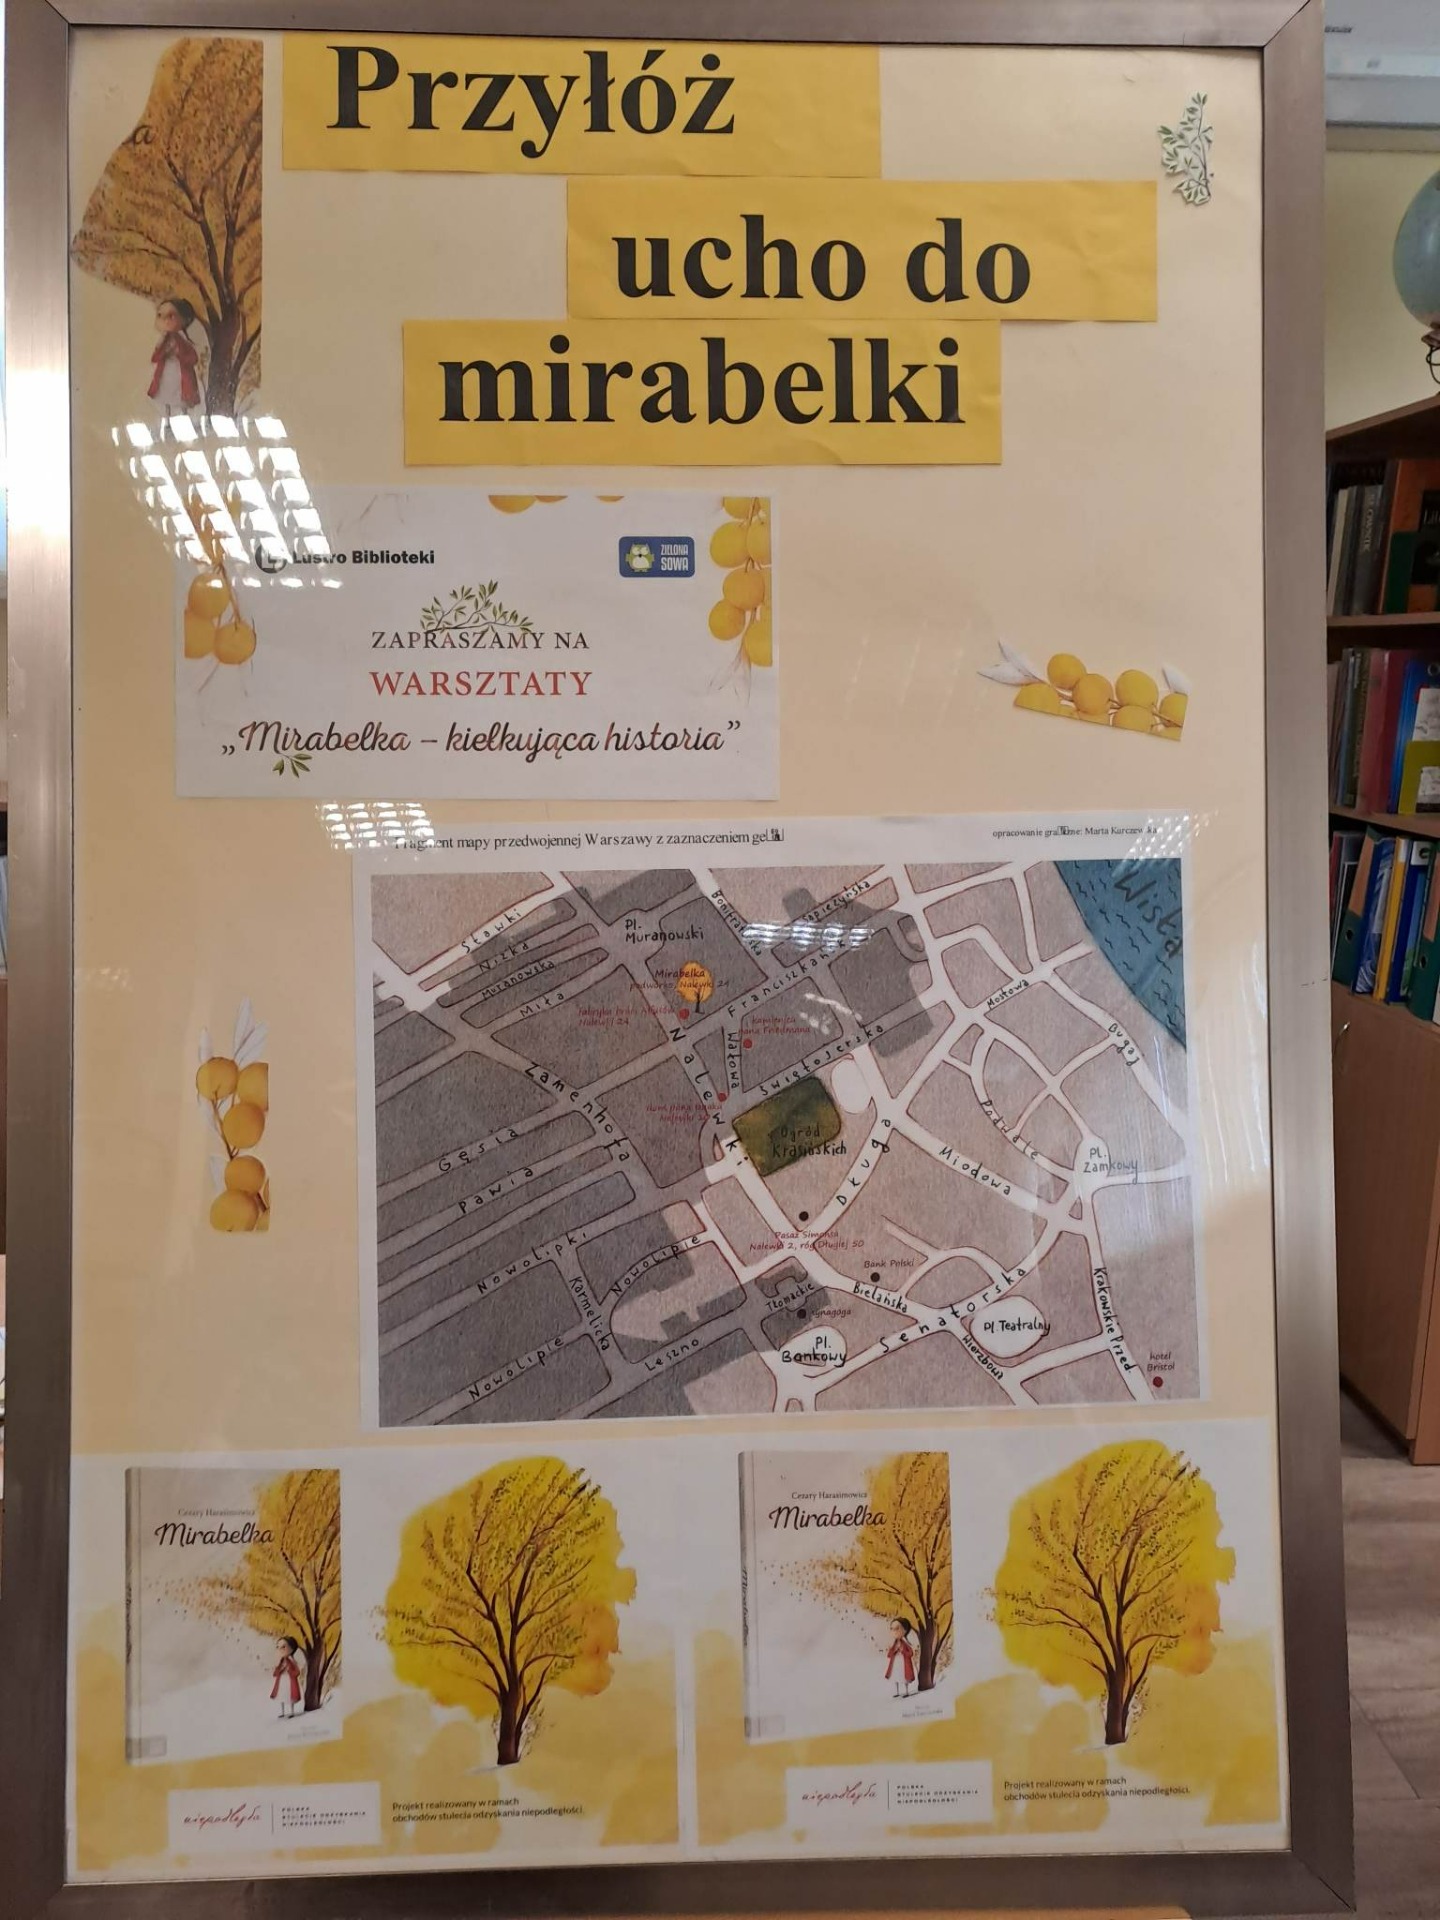 Mirabelka-kiełkująca historia (warsztaty w Miejskiej Bibliotece Publicznej w Lubaczowie) - Obrazek 1